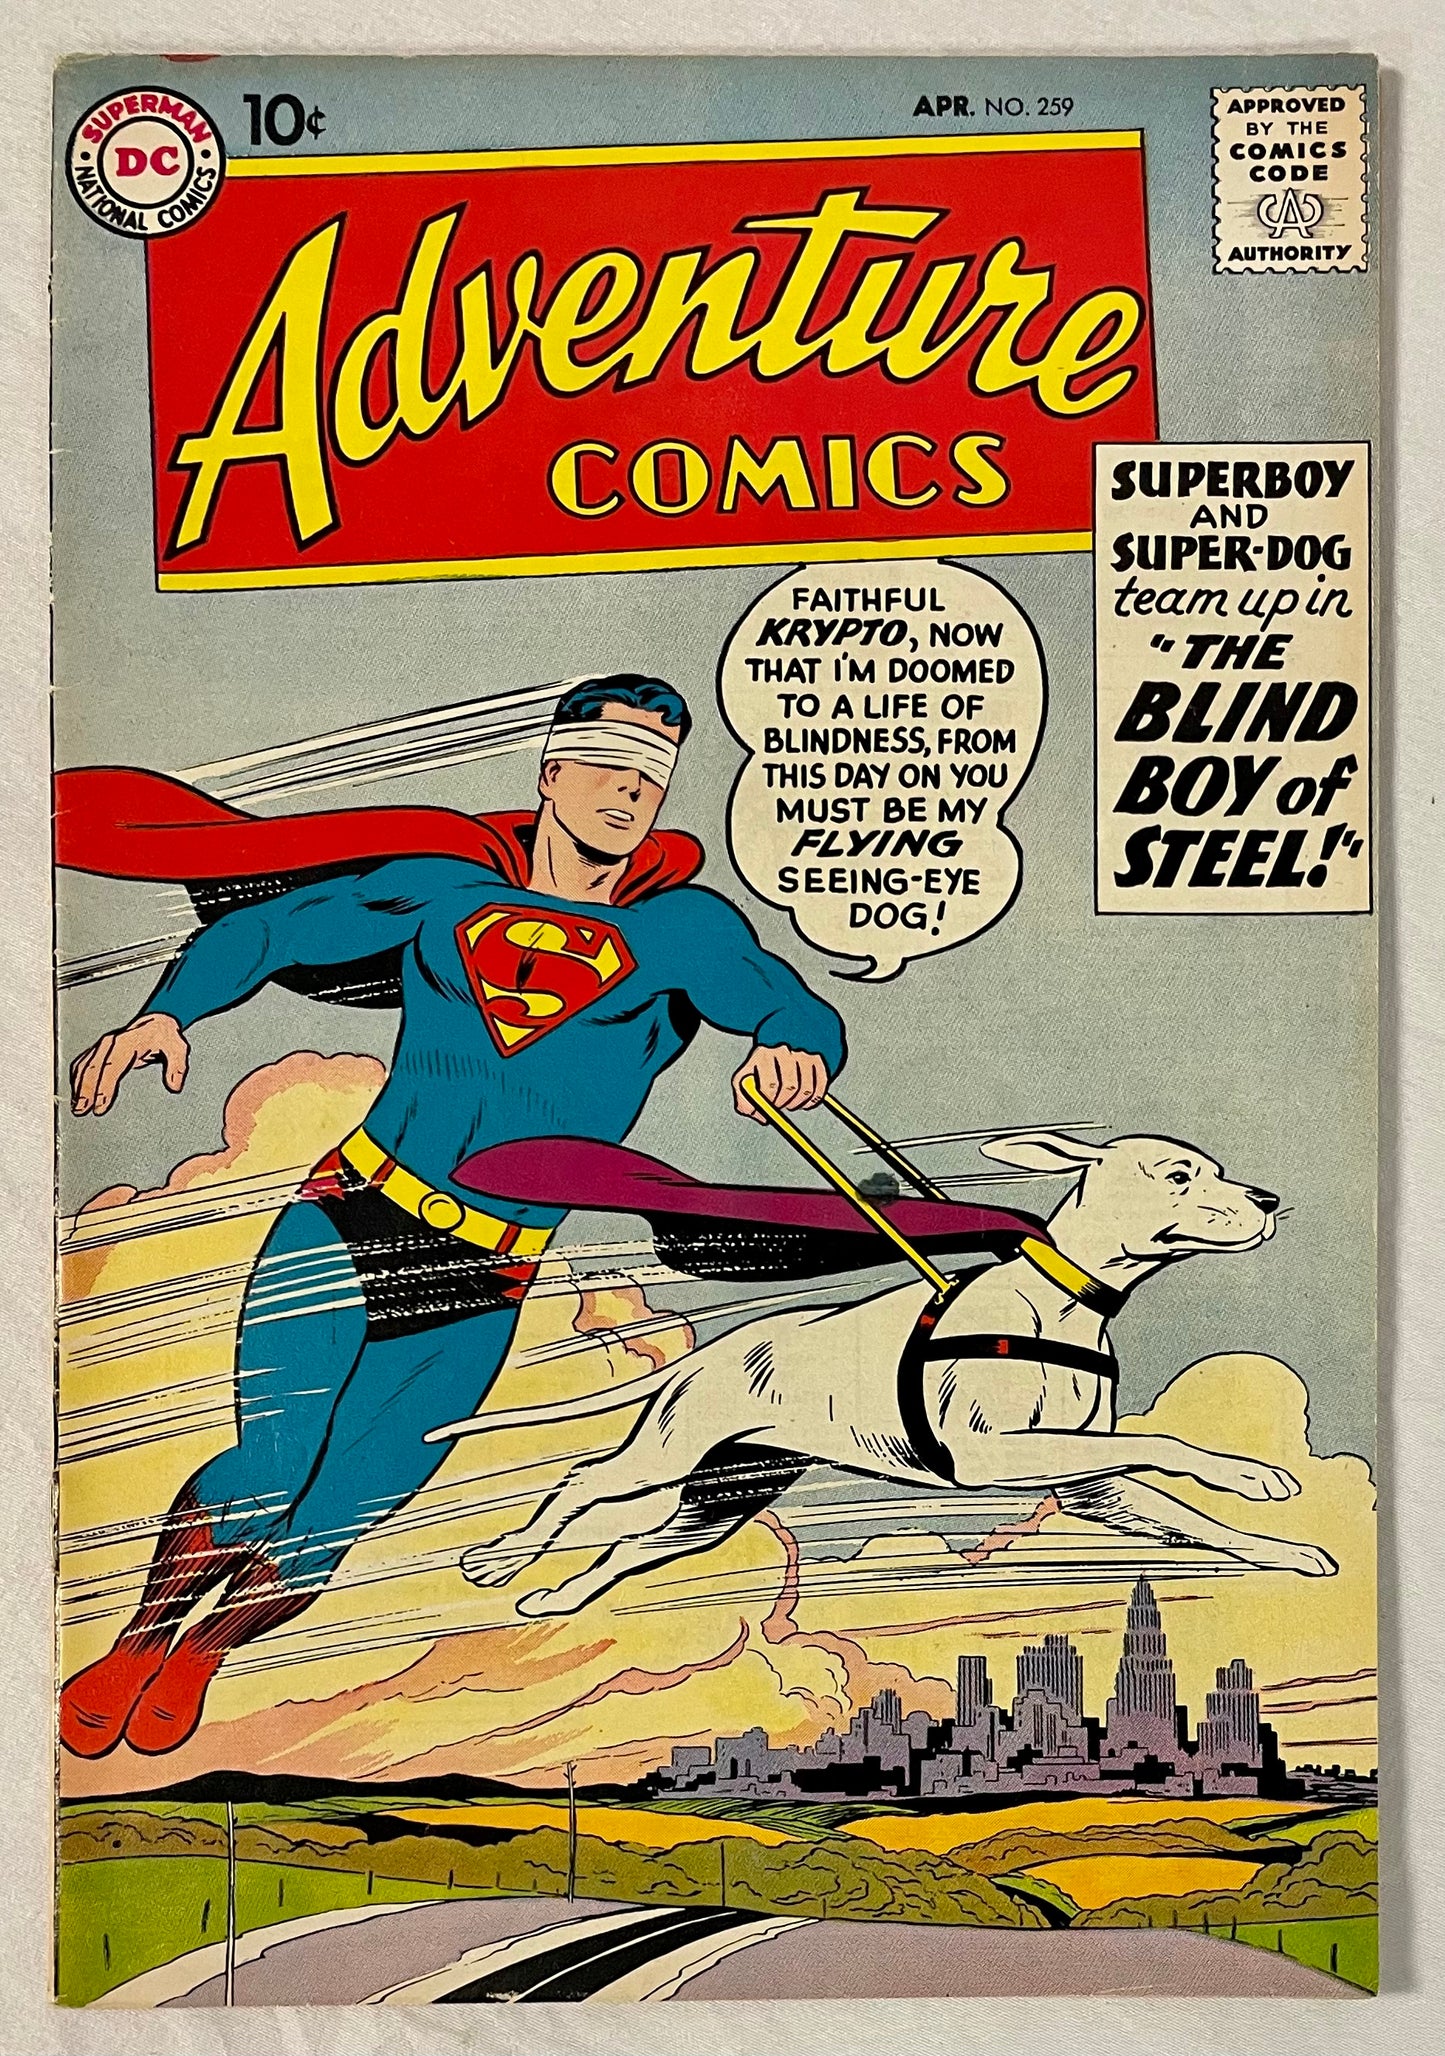 DC Comics Adventure Comics No. 259